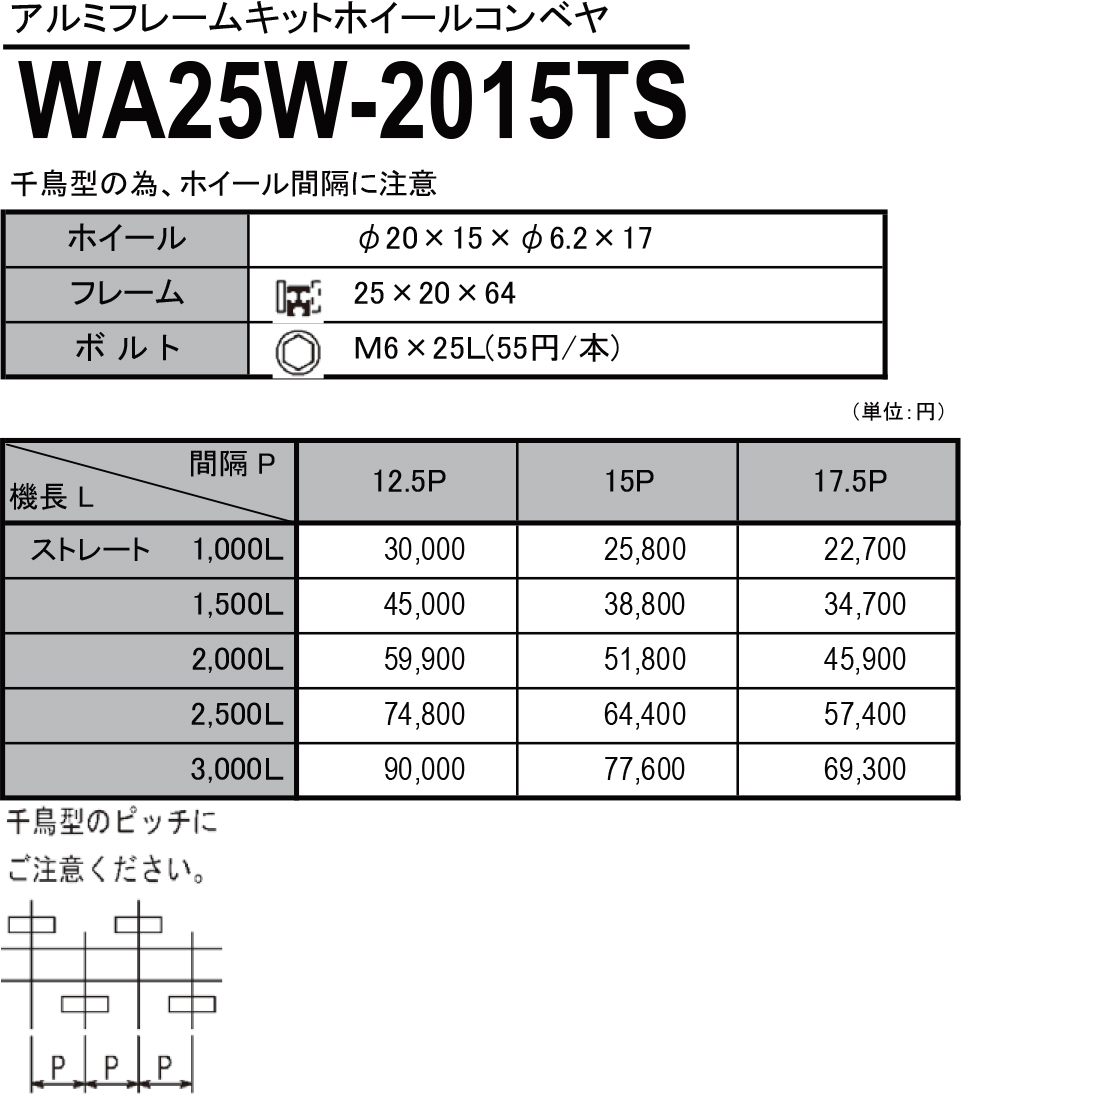 WA25W-2015TS　アルミフレームキットホイールコンベヤ　ホイールコンベヤ　価格表